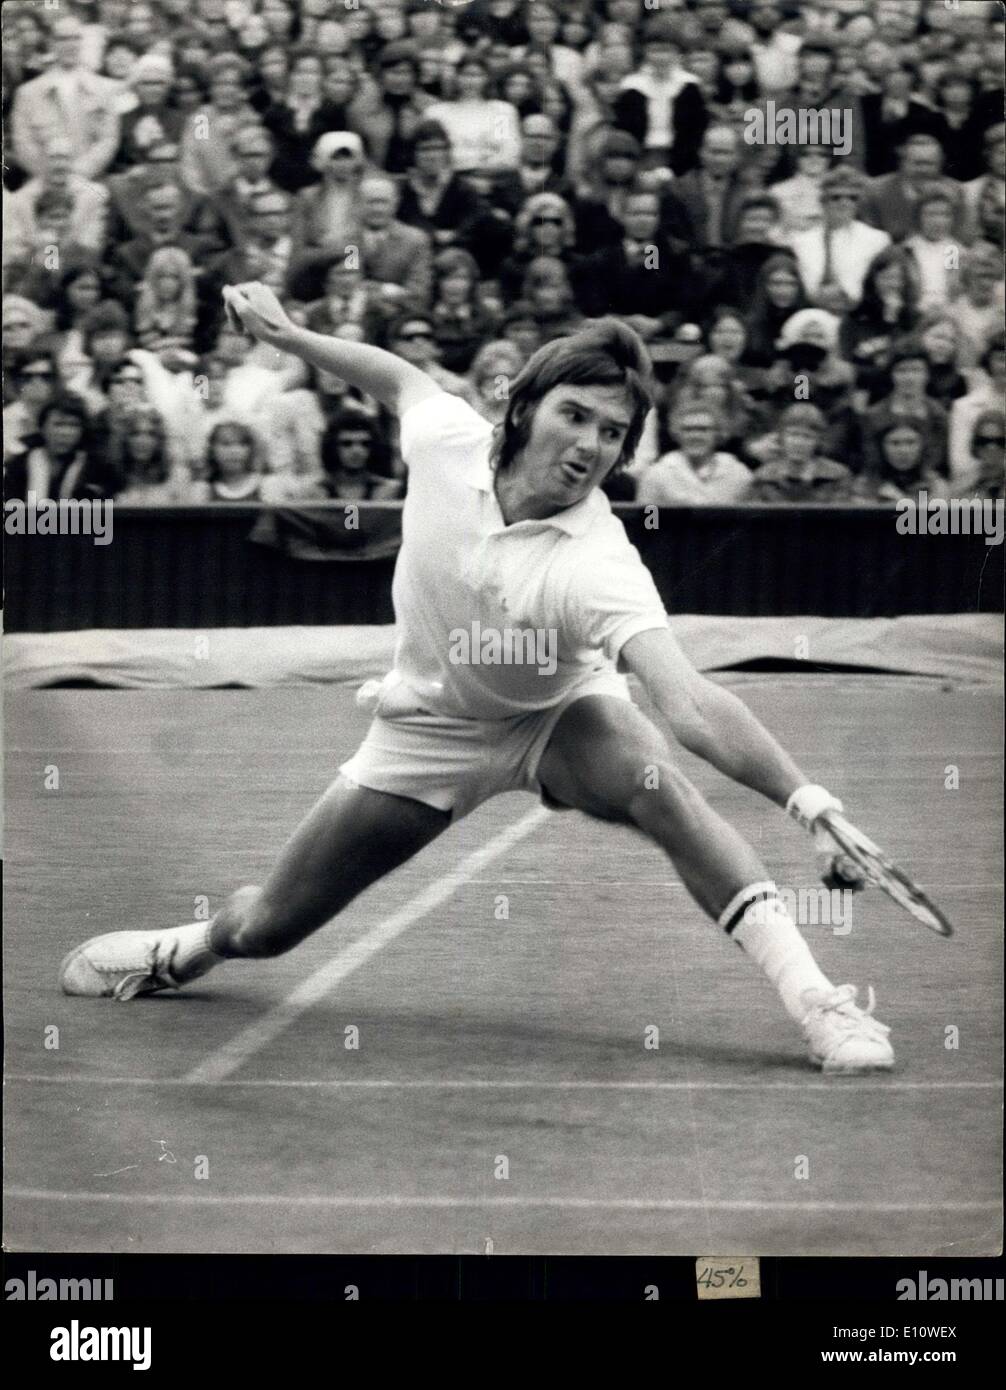 Giugno 28, 1974 - Wimbledon Tennis Championships Jimmy Connors (USA) Versus P. Dent (Australia). Mostra fotografica di Jimmy Connors (USA) visto in azione durante la sua partita contro P. Dent (Australia) oggi. Foto Stock